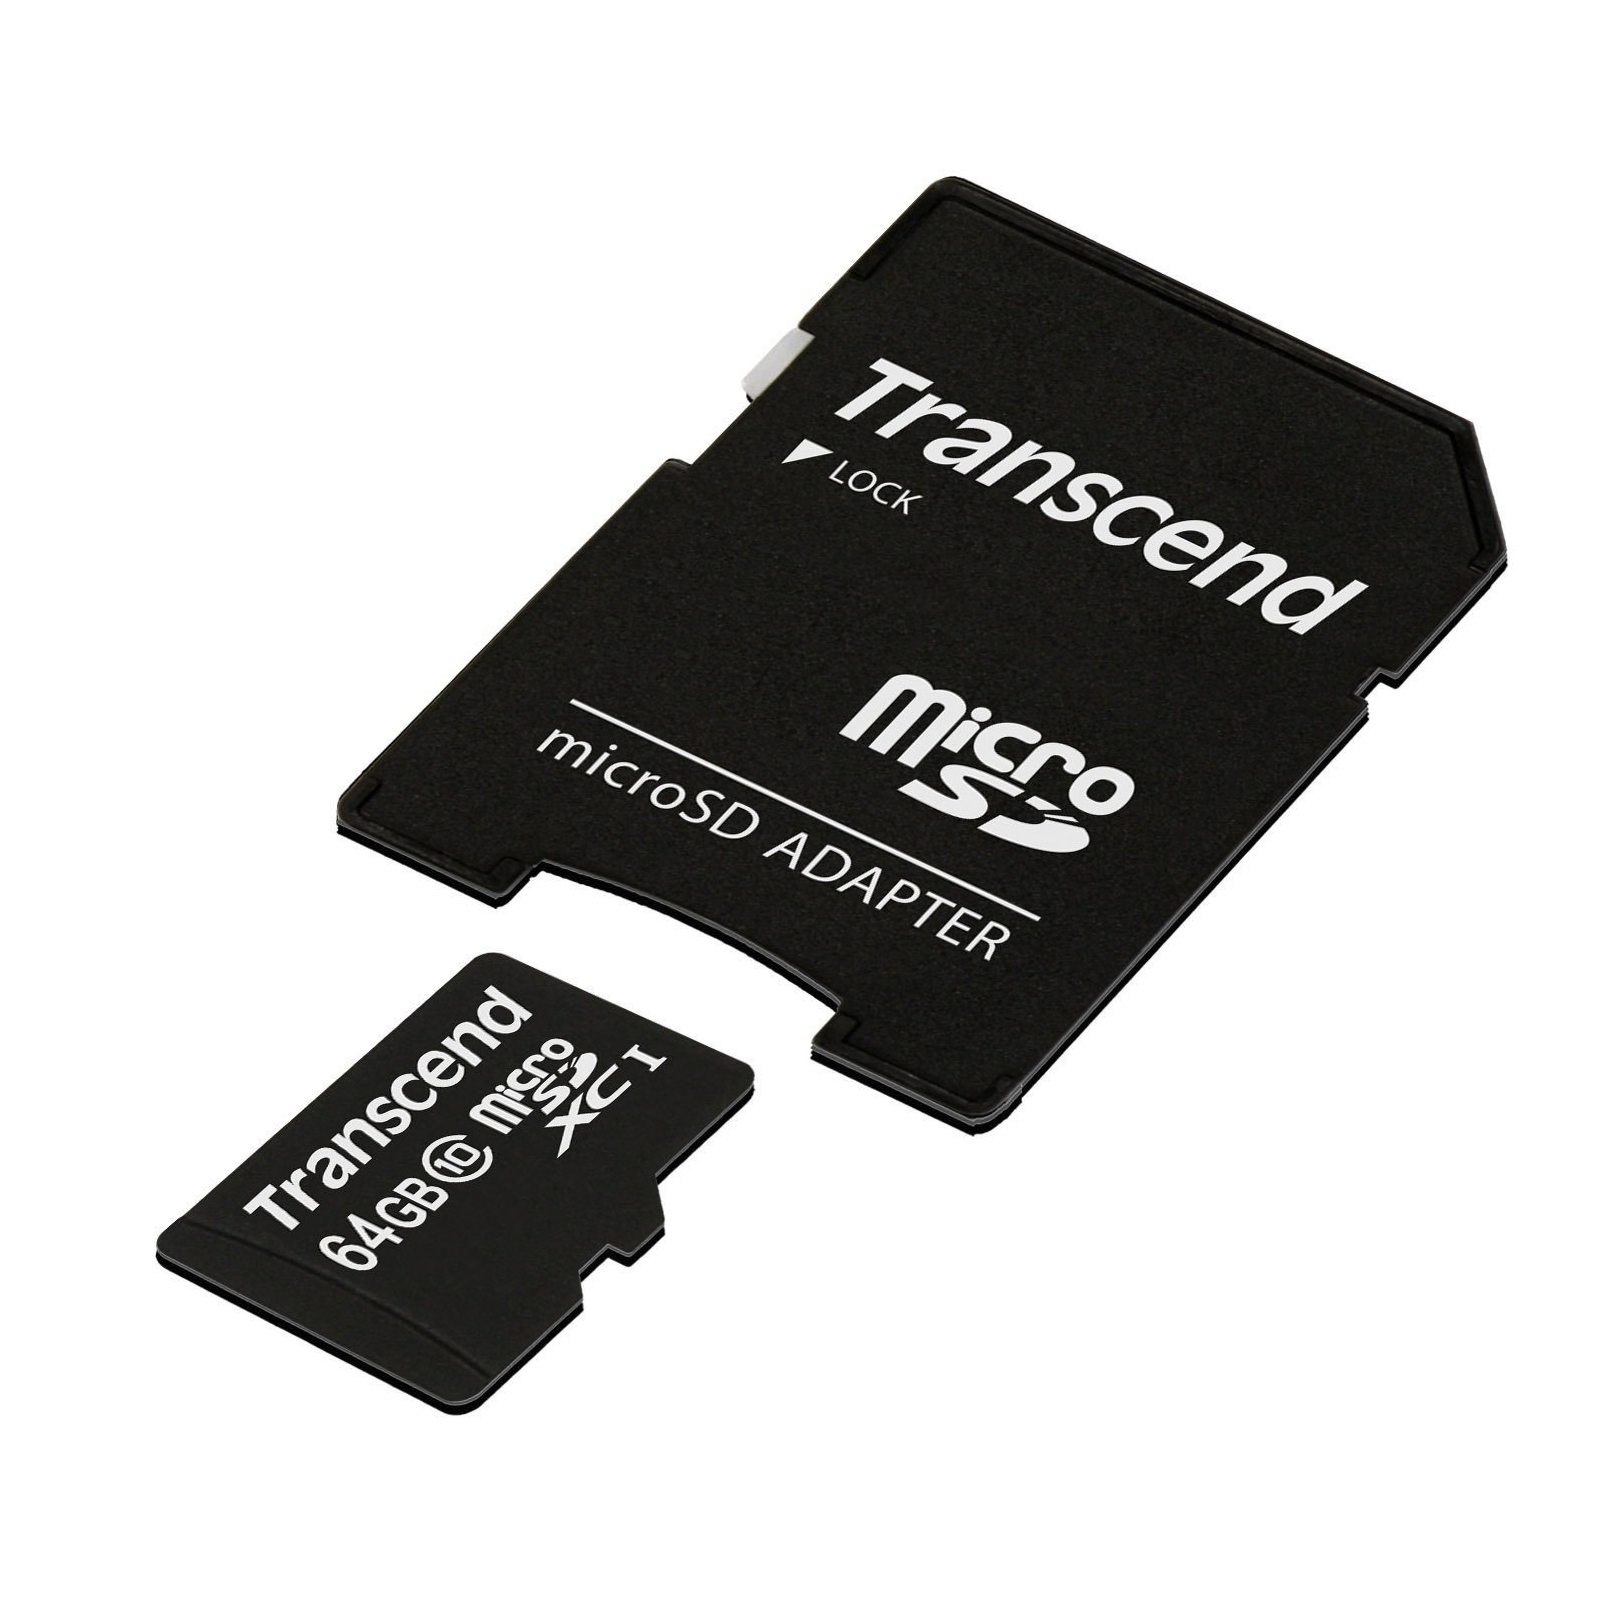 Карта памяти Transcend 64GB microSDXC Class 10 (TS64GUSDXC10) изображение 2